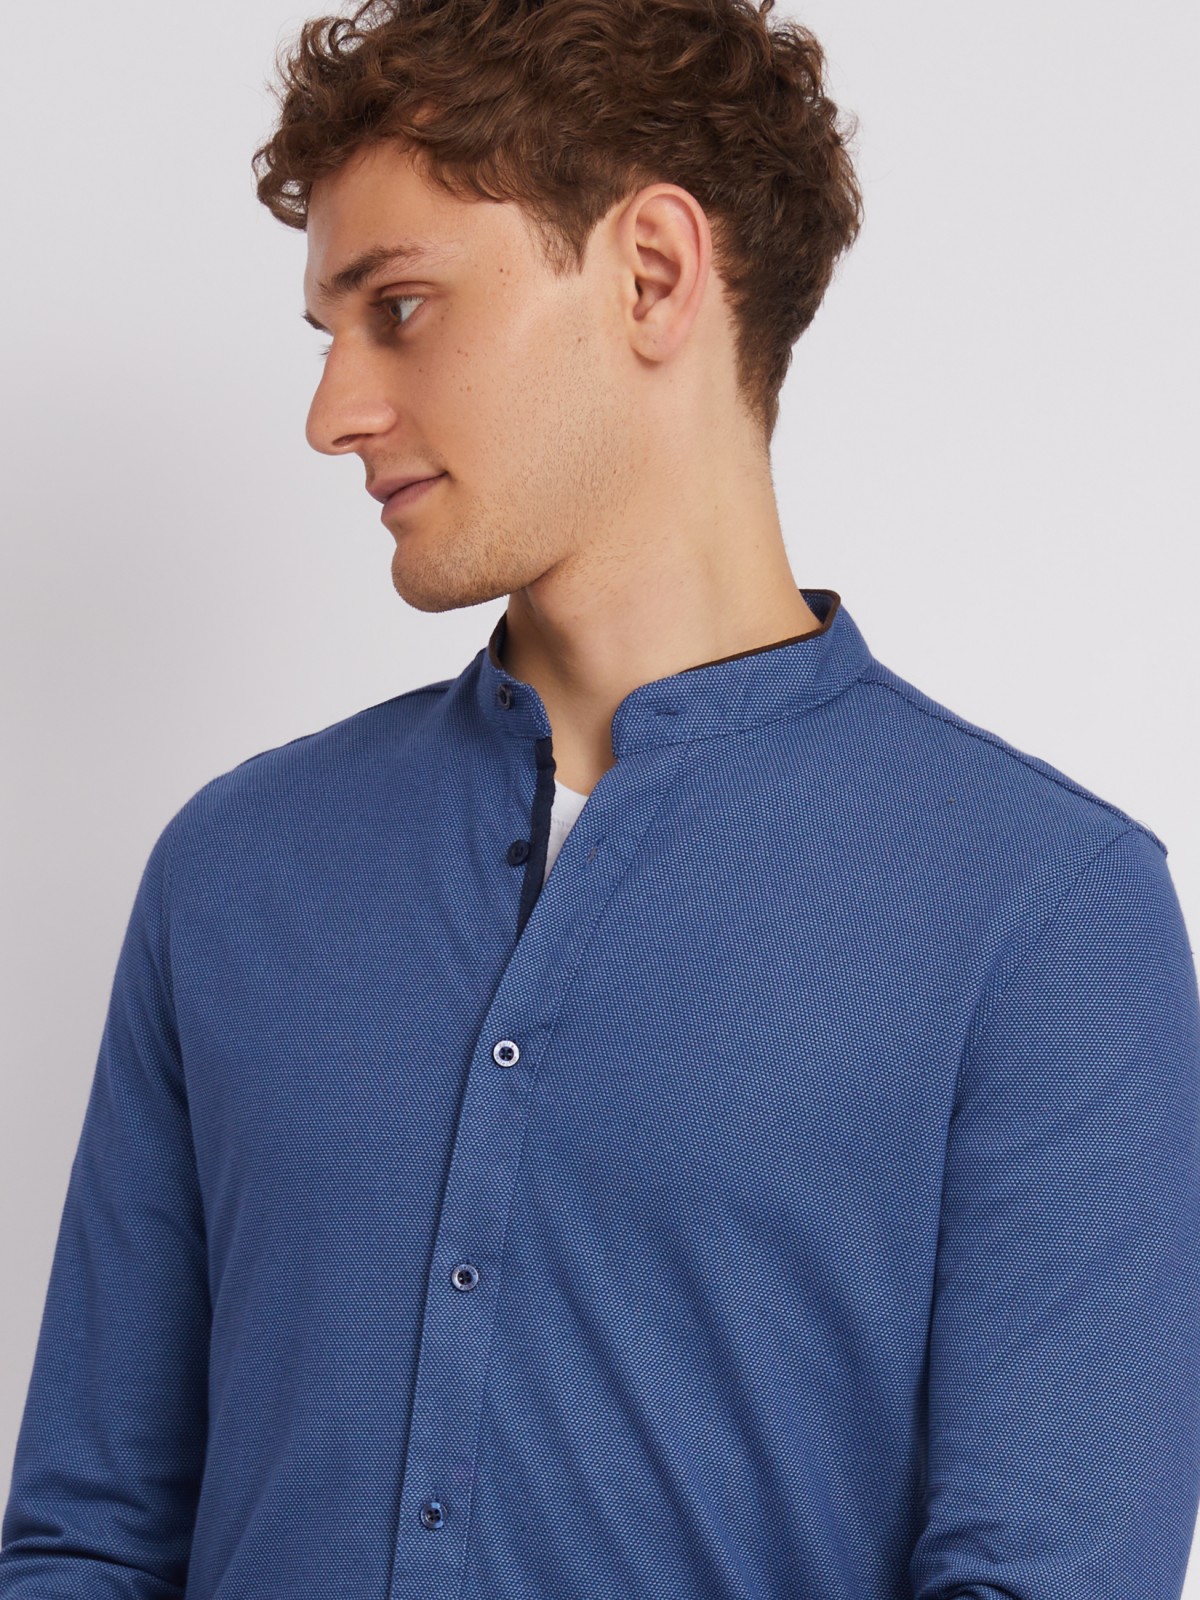 Офисная рубашка из хлопка с воротником-стойкой и длинным рукавом zolla 012322159071, цвет темно-синий, размер M - фото 4